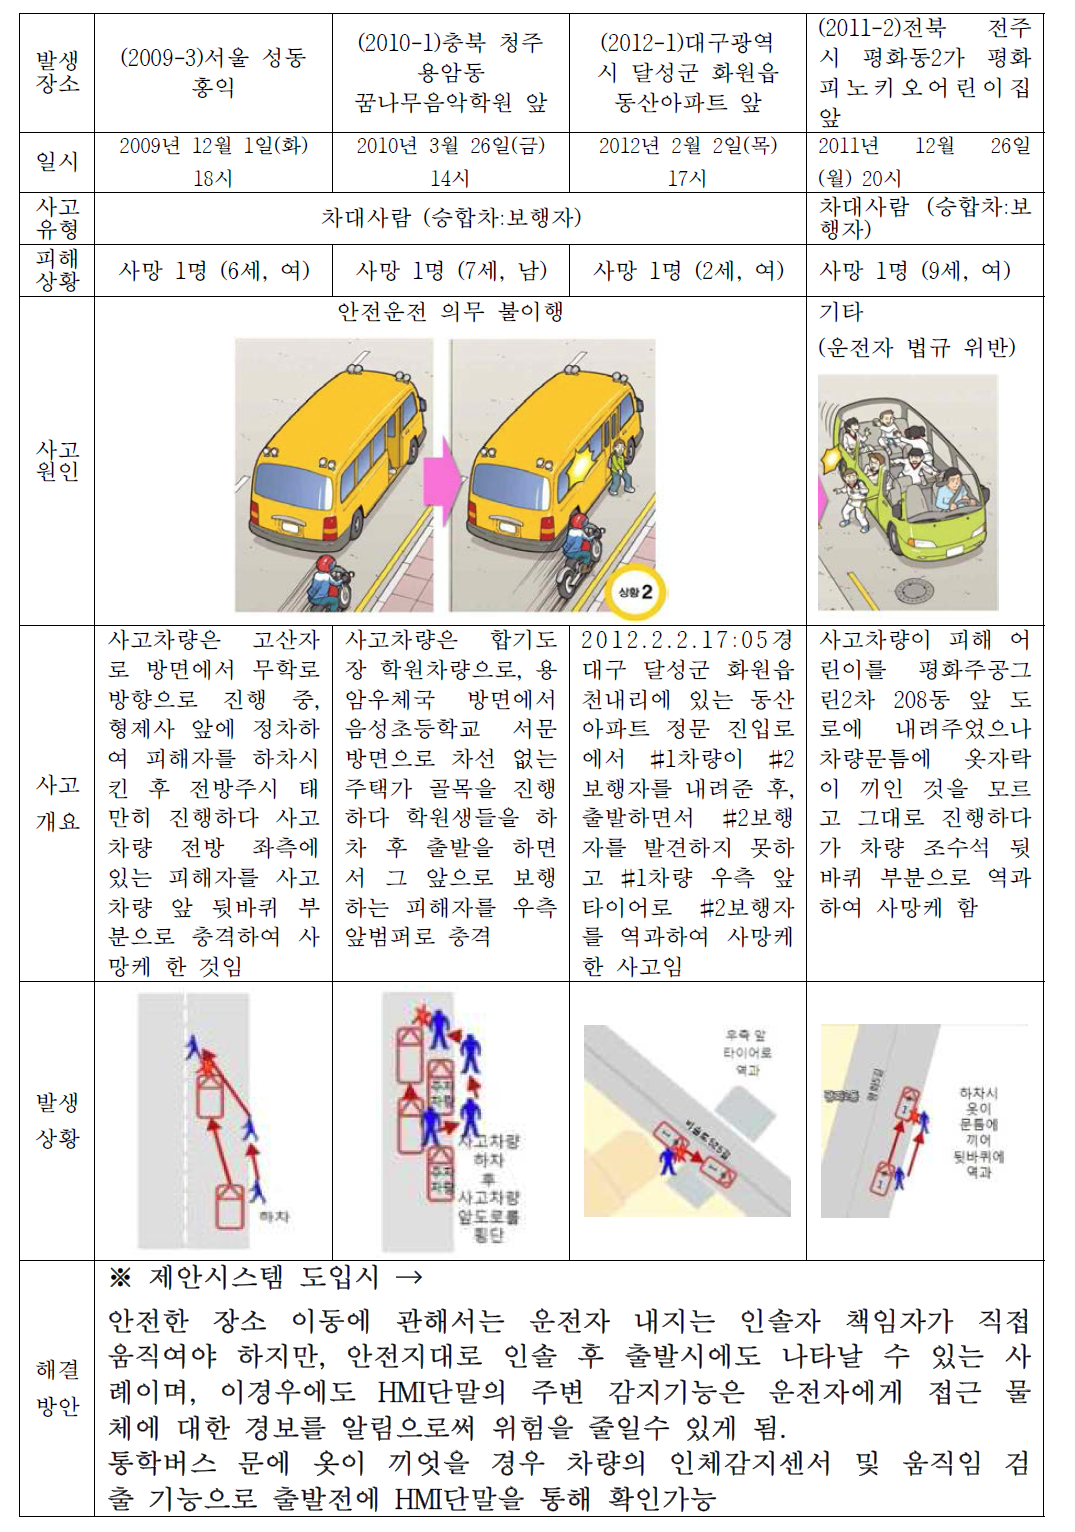 통학버스 승하차 시 안전 지대 이동 확인 의무 불이행 사고 사례